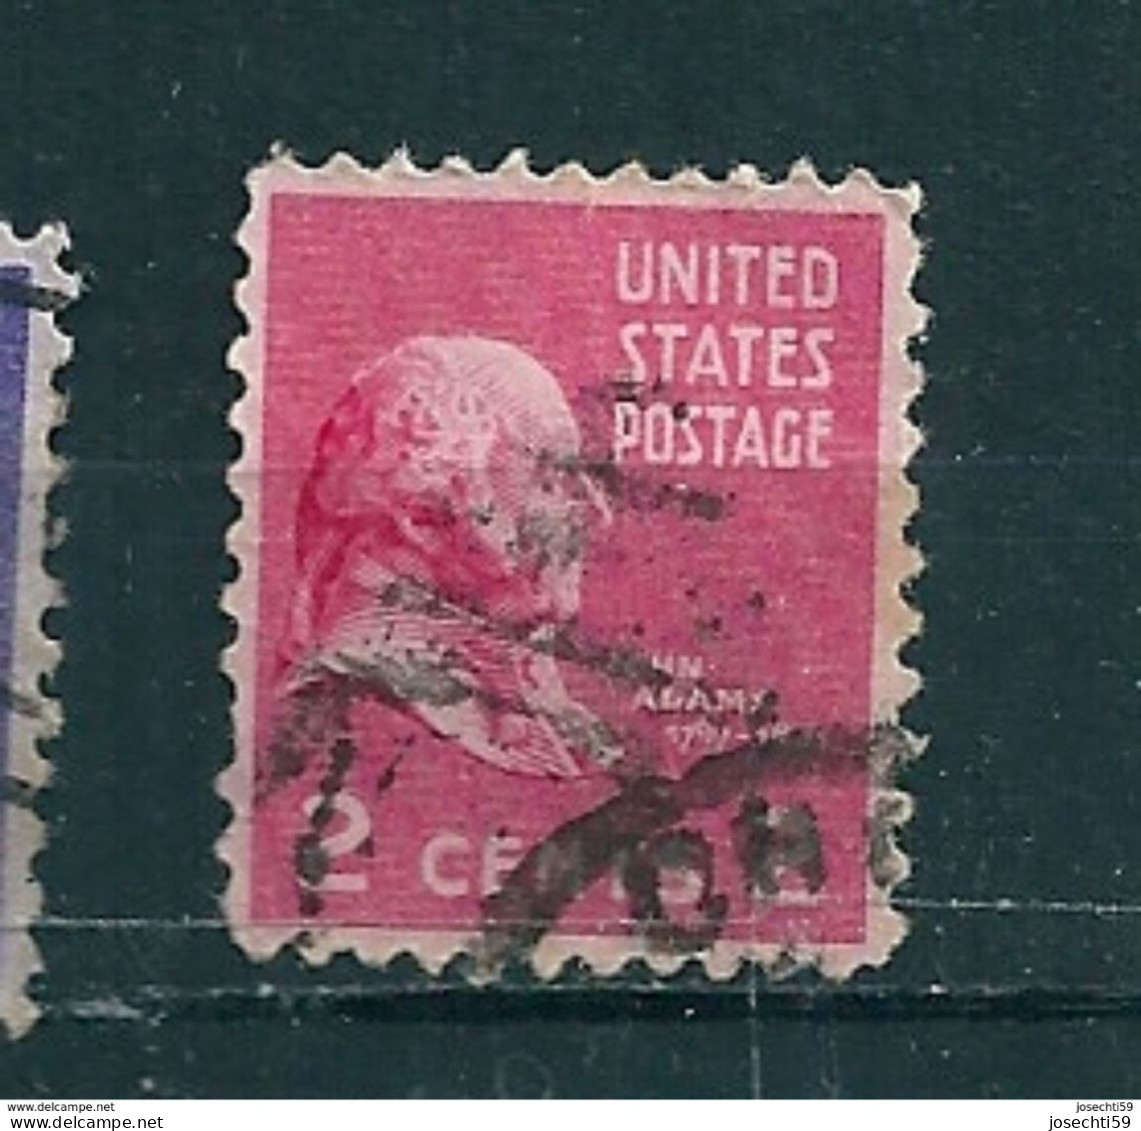 N° 371  John Adams 2c., Rose Carminé Timbre USA  Stamp Etats Unis D' Amérique  (1938) - Gebruikt